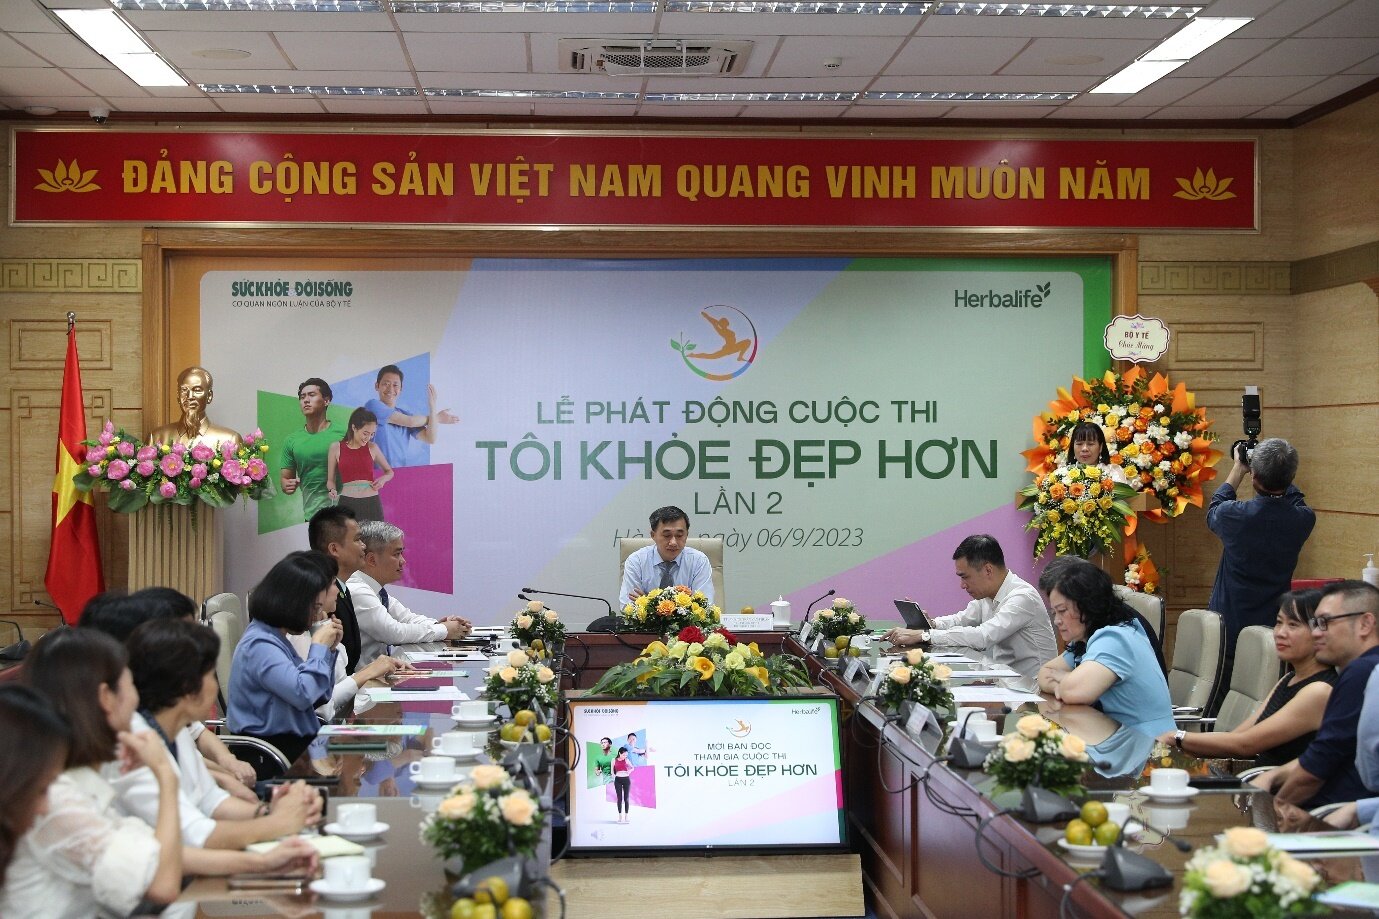 Cuộc thi “Tôi khỏe đẹp hơn” lần 2 với sự đồng hành của Herbalife Việt Nam chính thức được phát động.